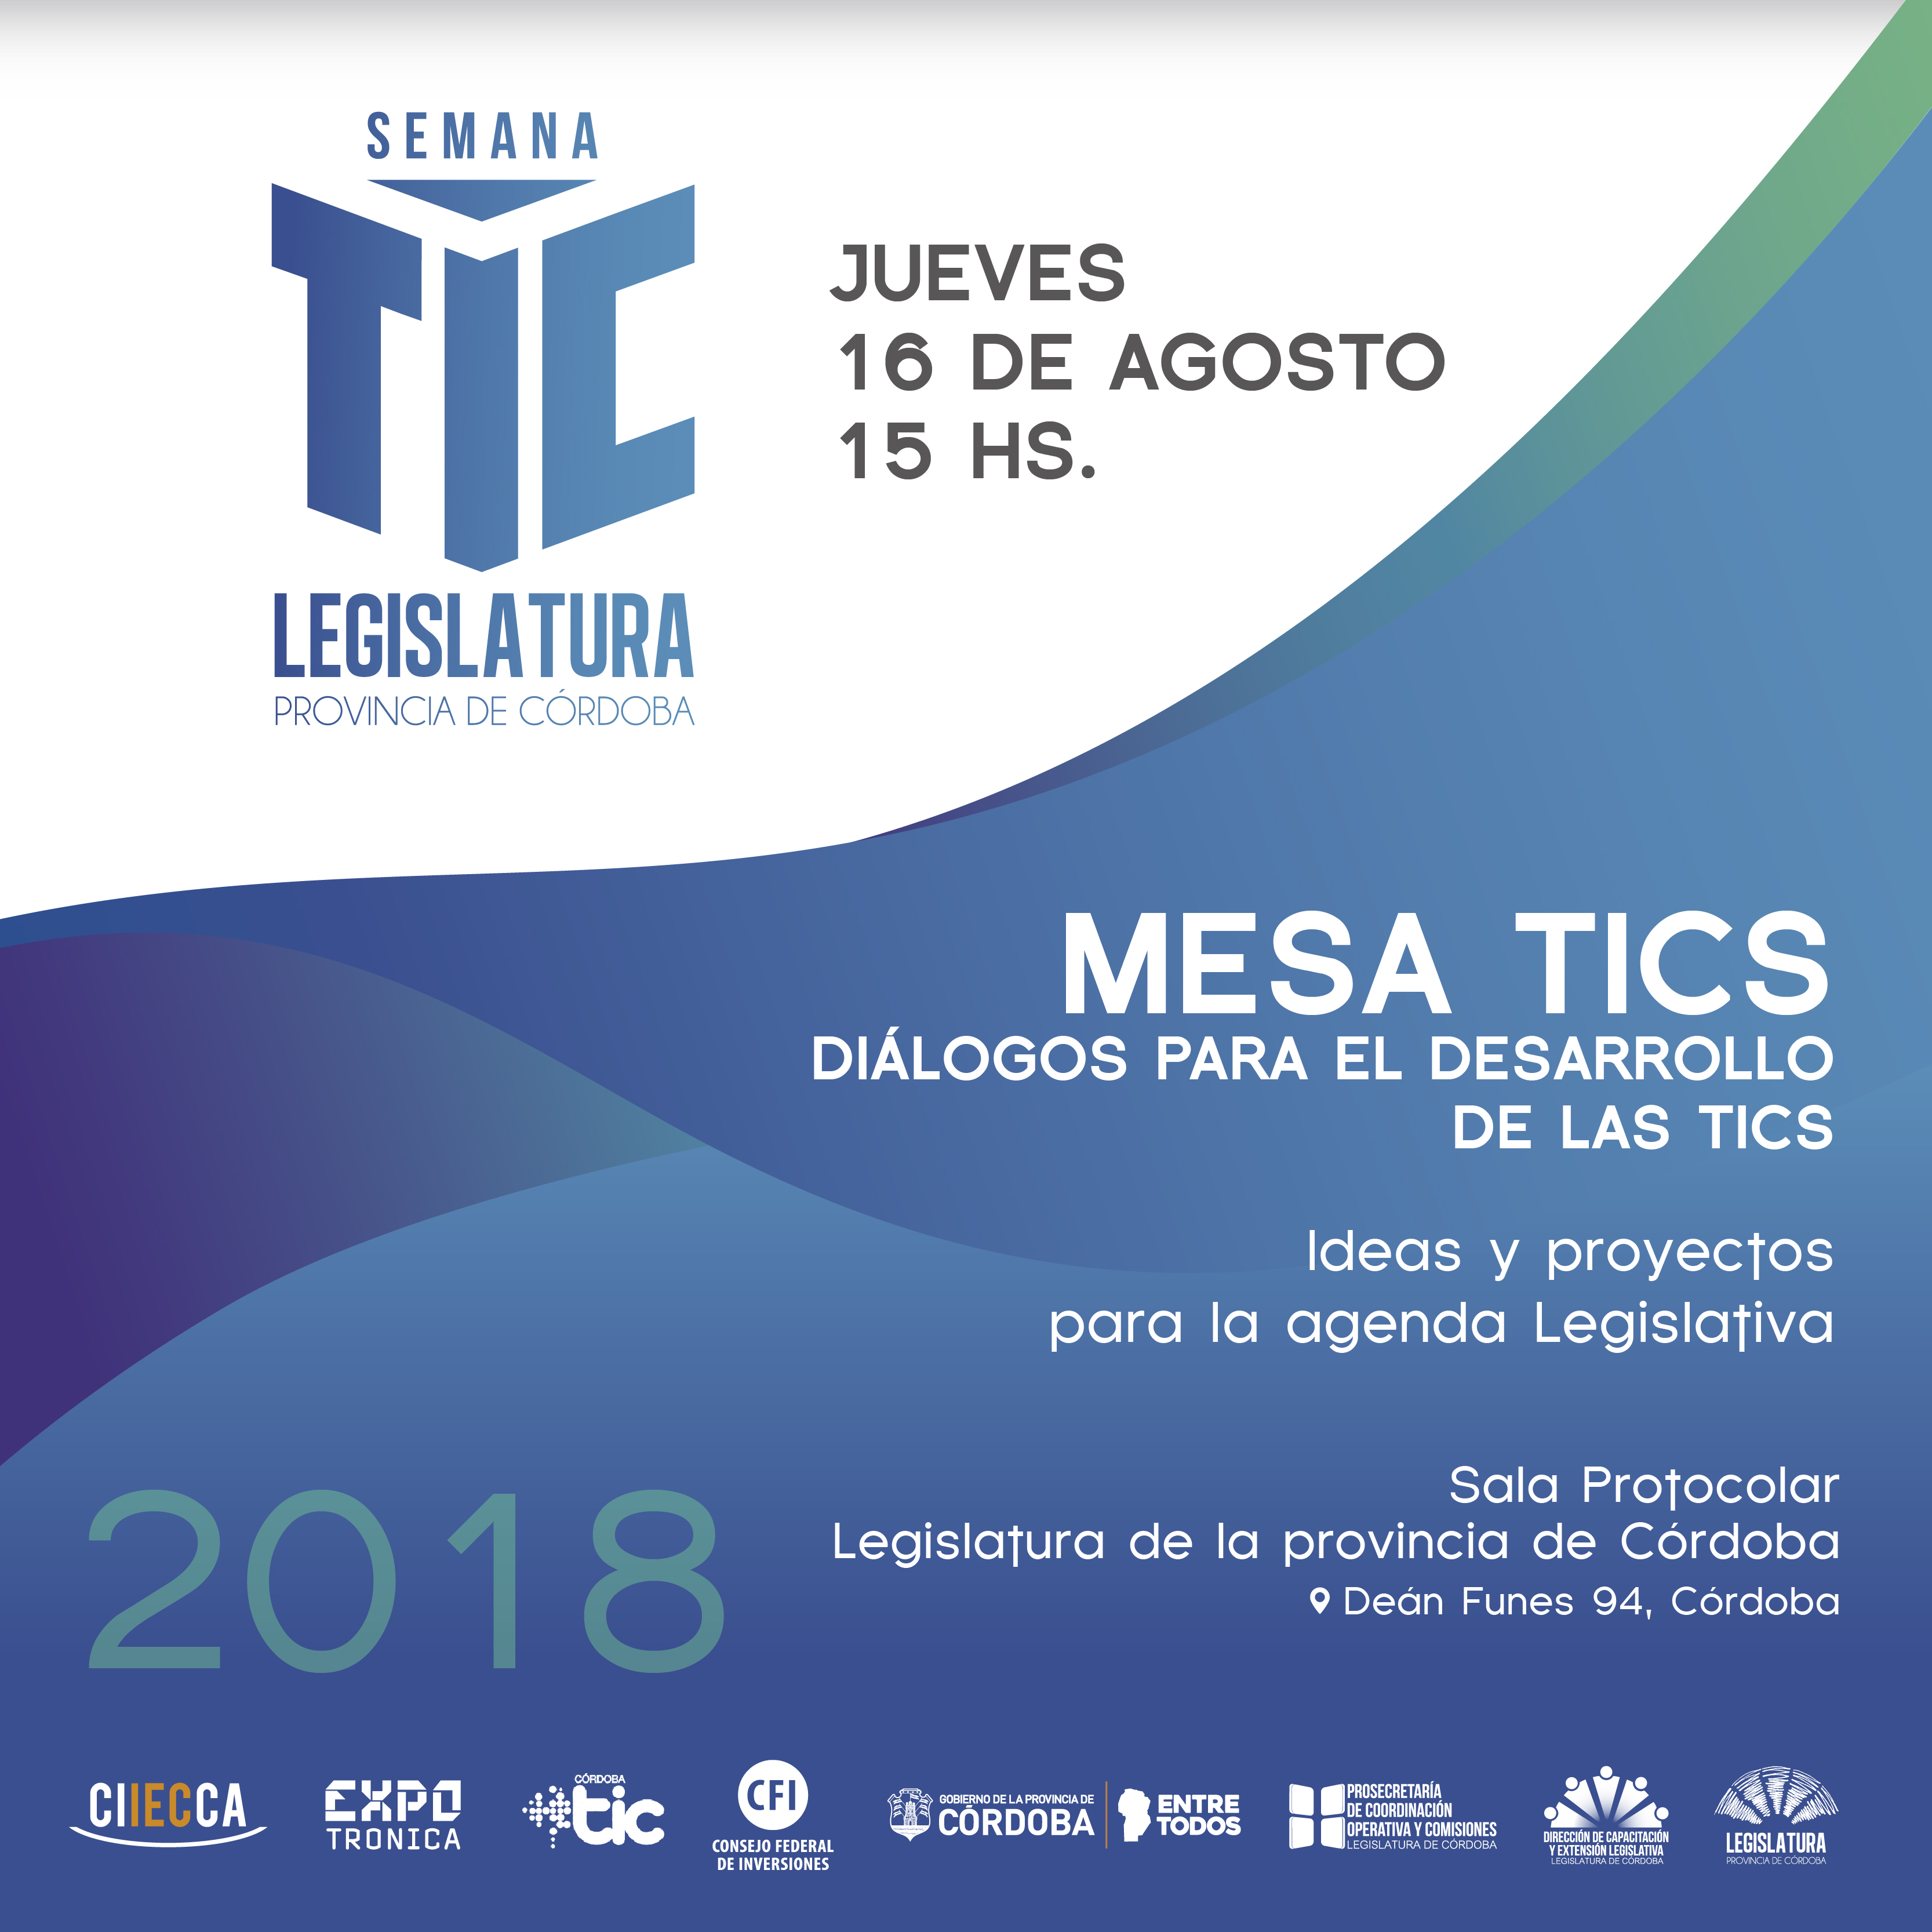 Semana TIC Córdoba en la Legislatura de Córdoba • Canal C